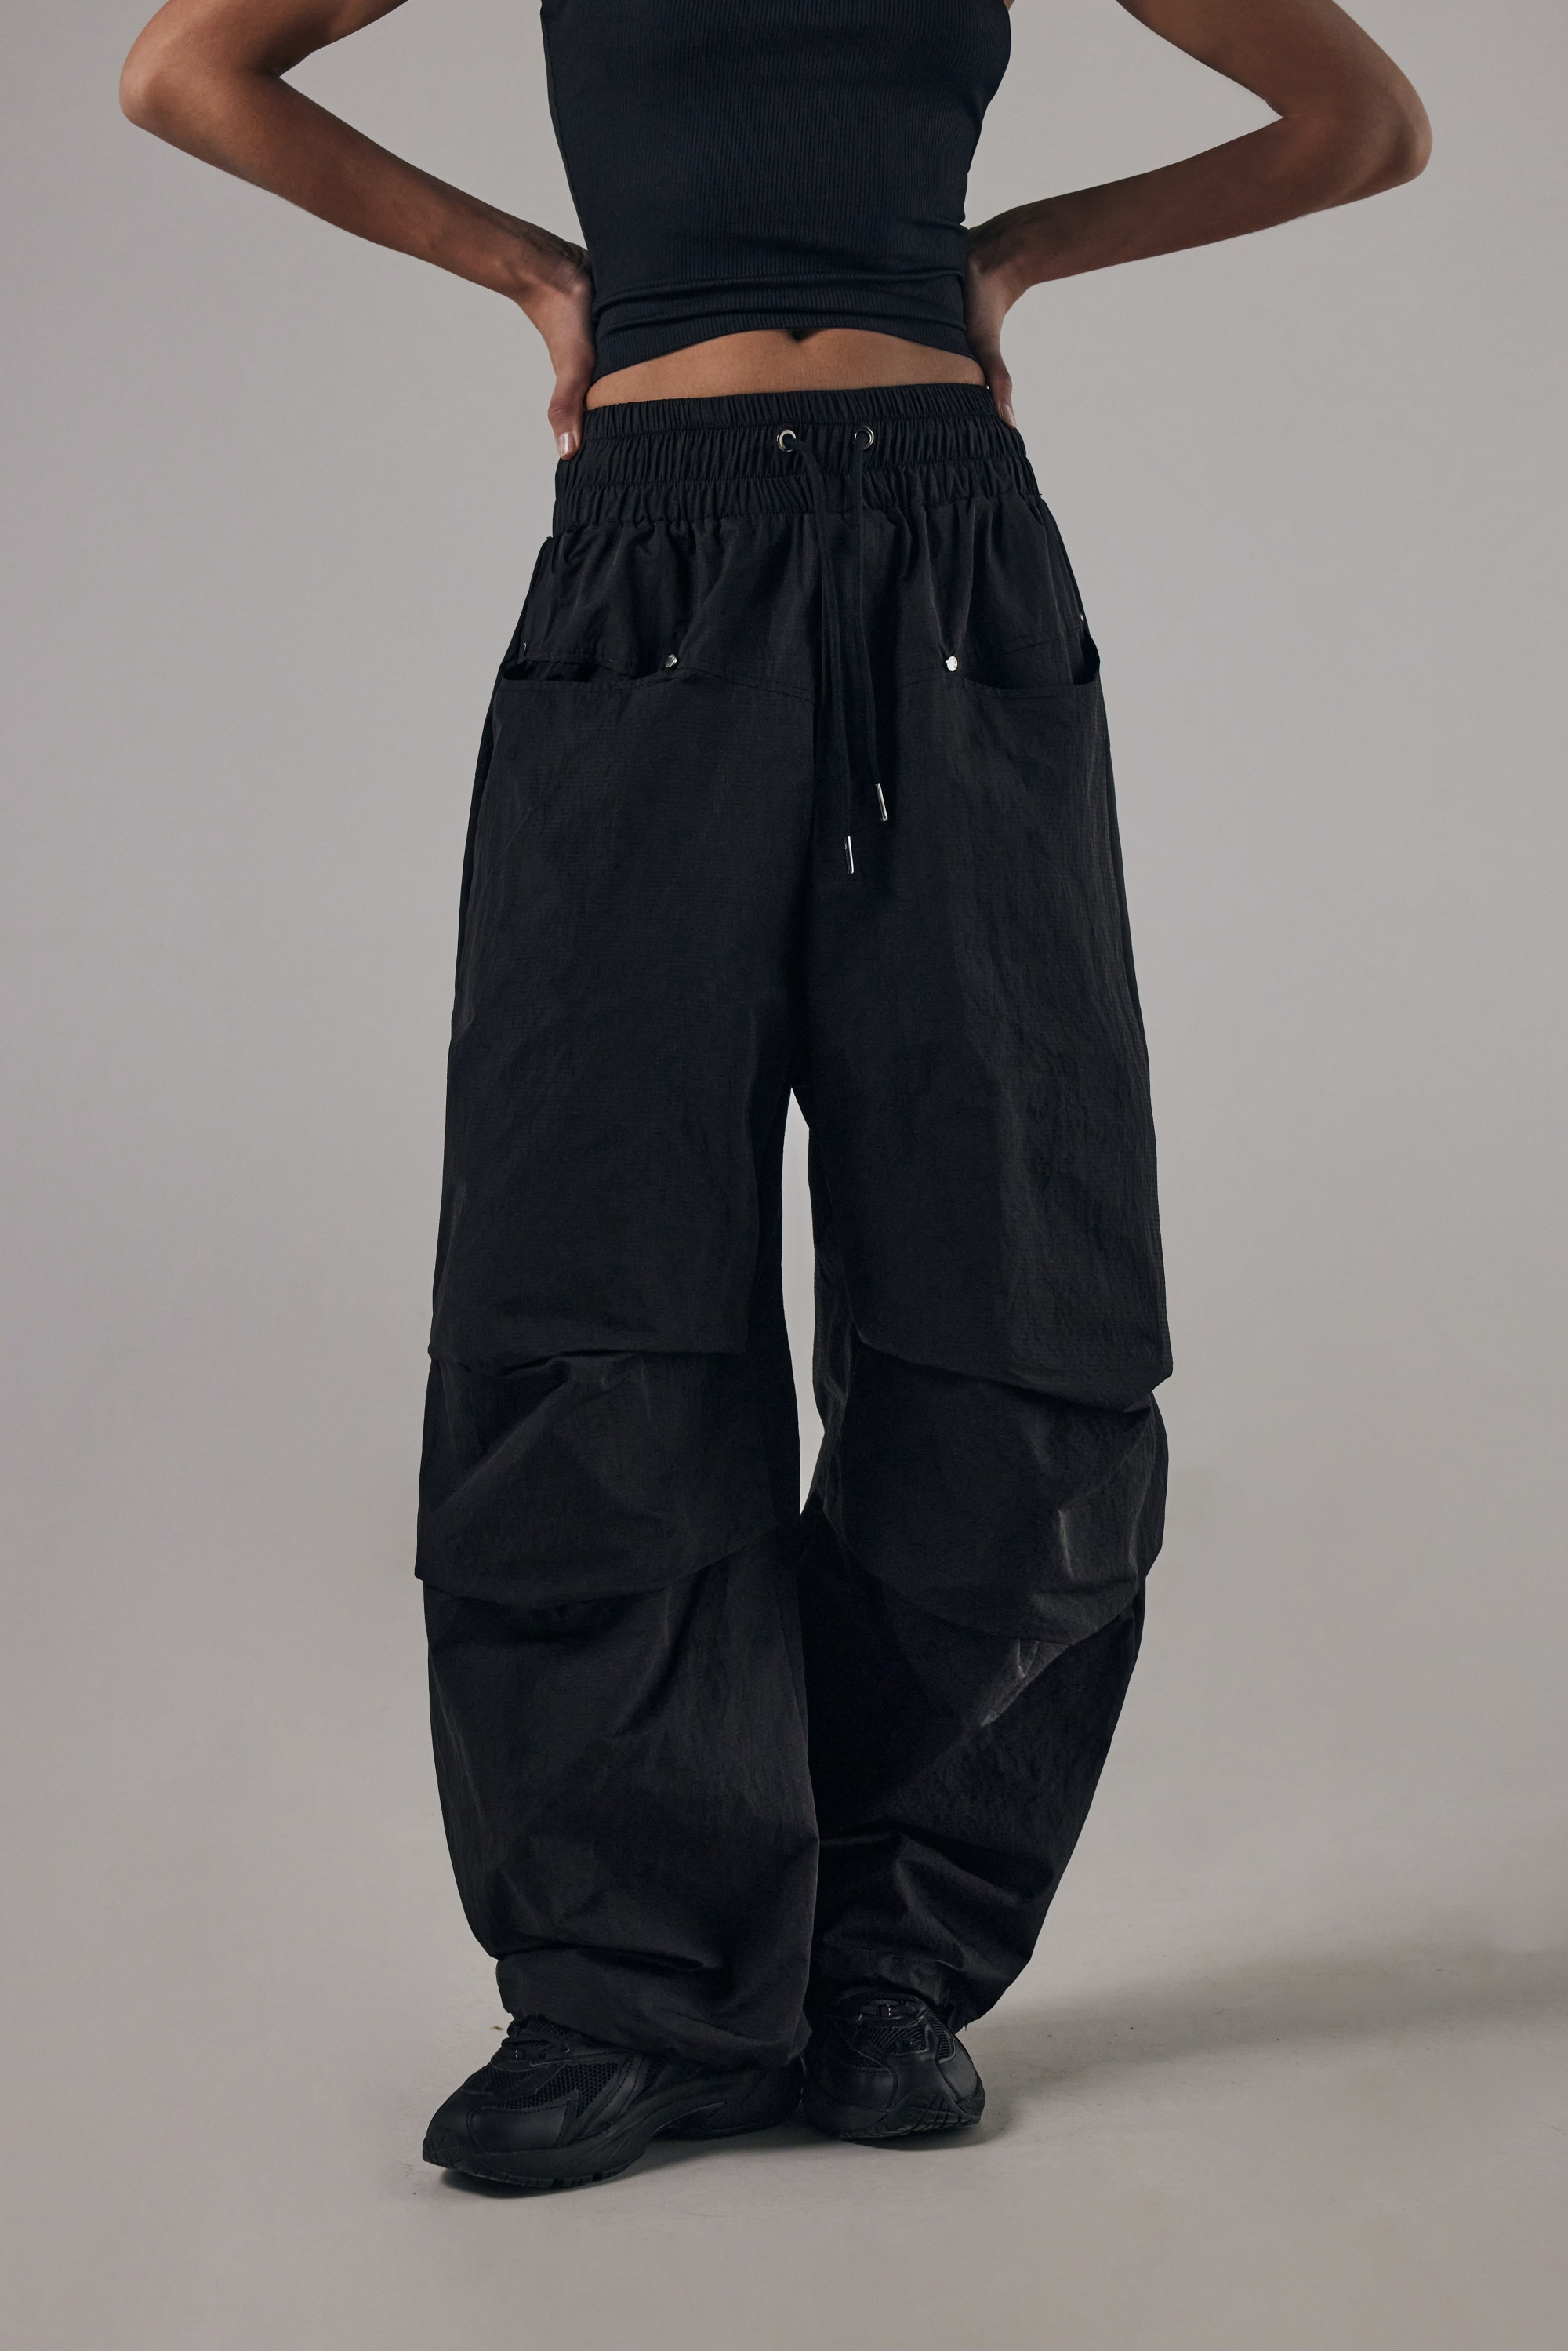 Round Rivet Nylon Set-up Pants [ Black ]